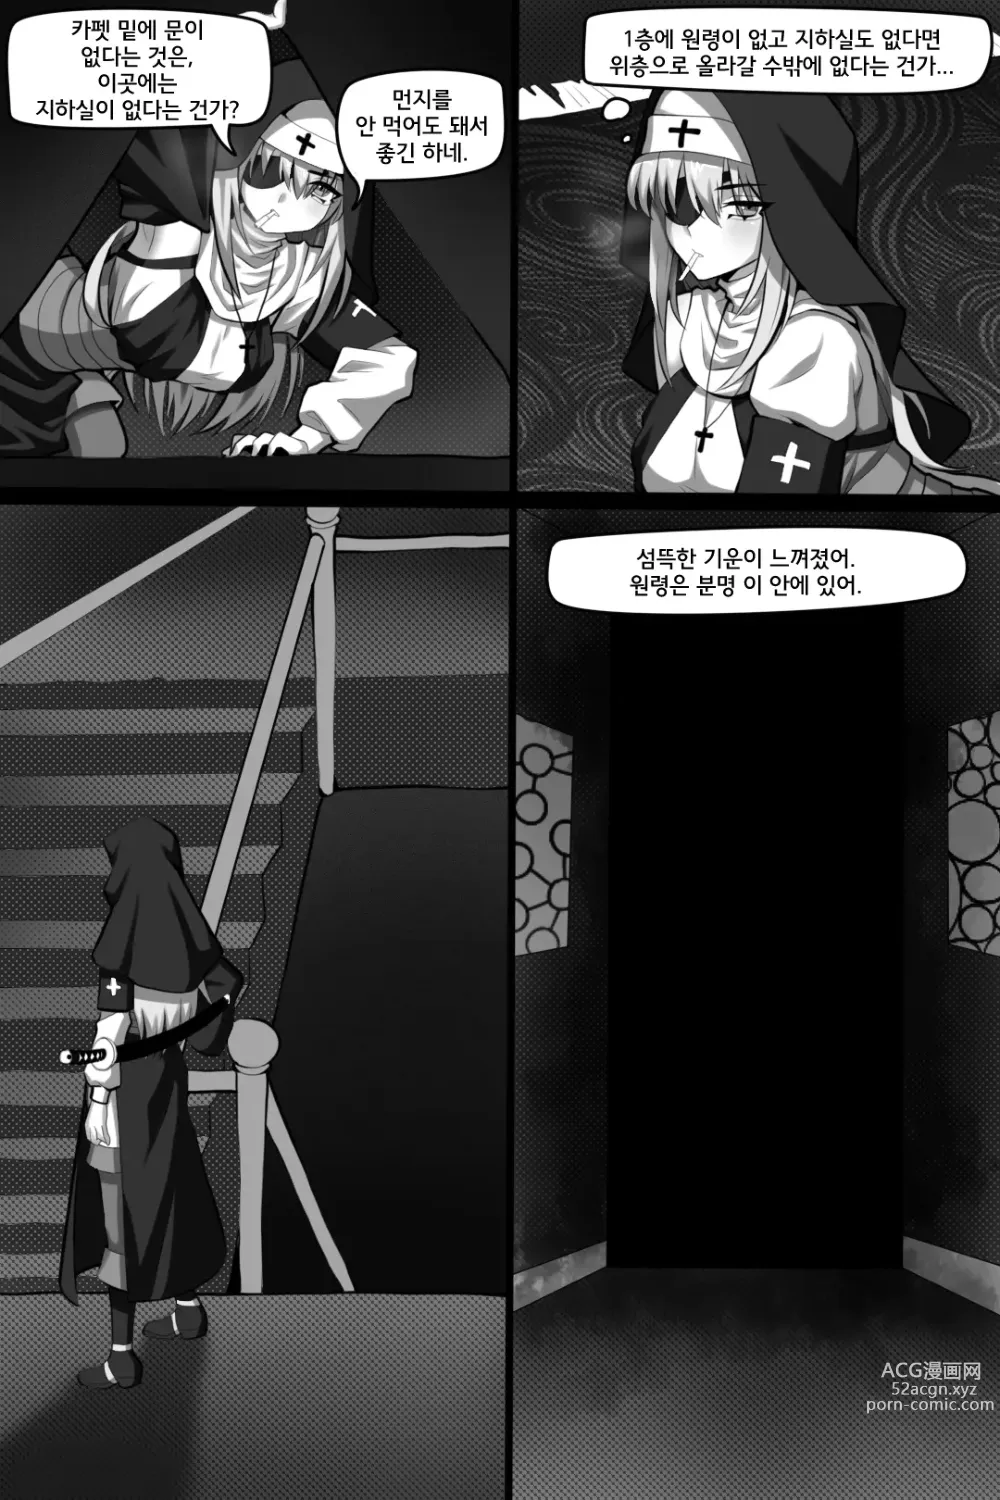 Page 5 of doujinshi 빈리안 시 2화: 퇴마수녀